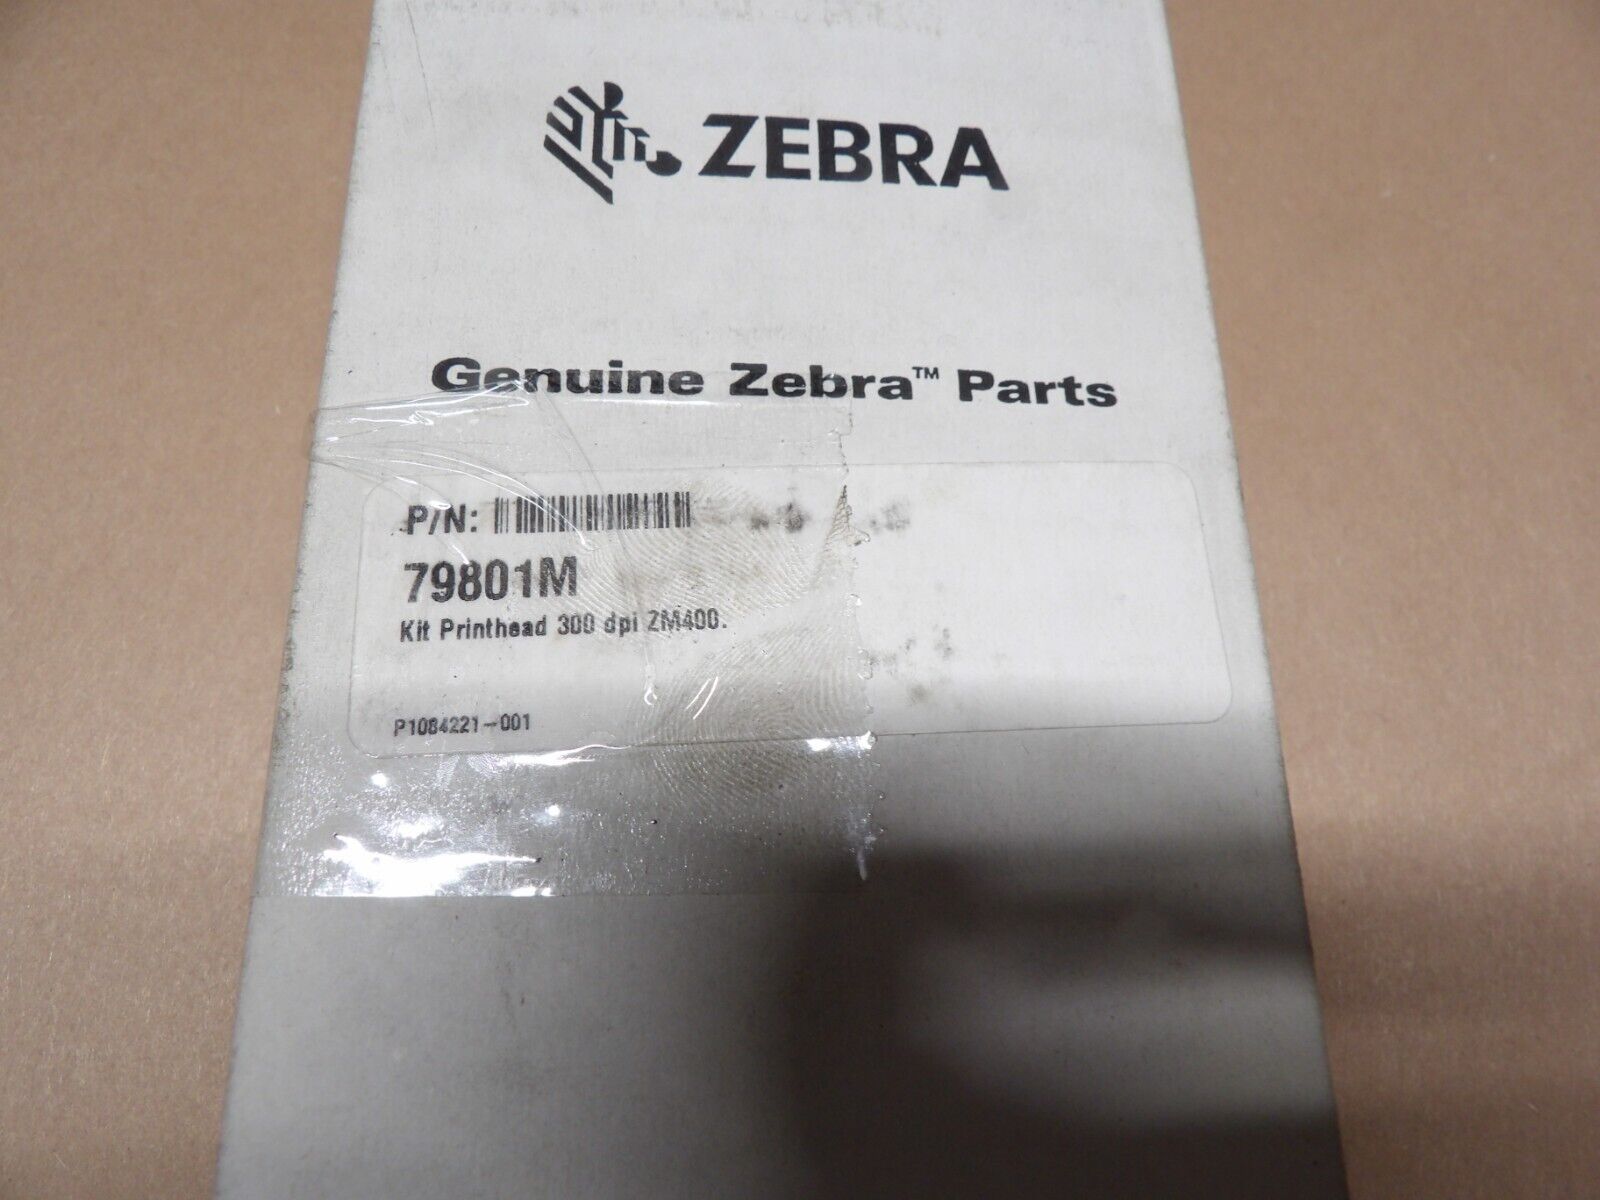 Genuine Zebra Thermal Printhead 203 or 300dpi for ZM400 Printer 79800M or 79801M